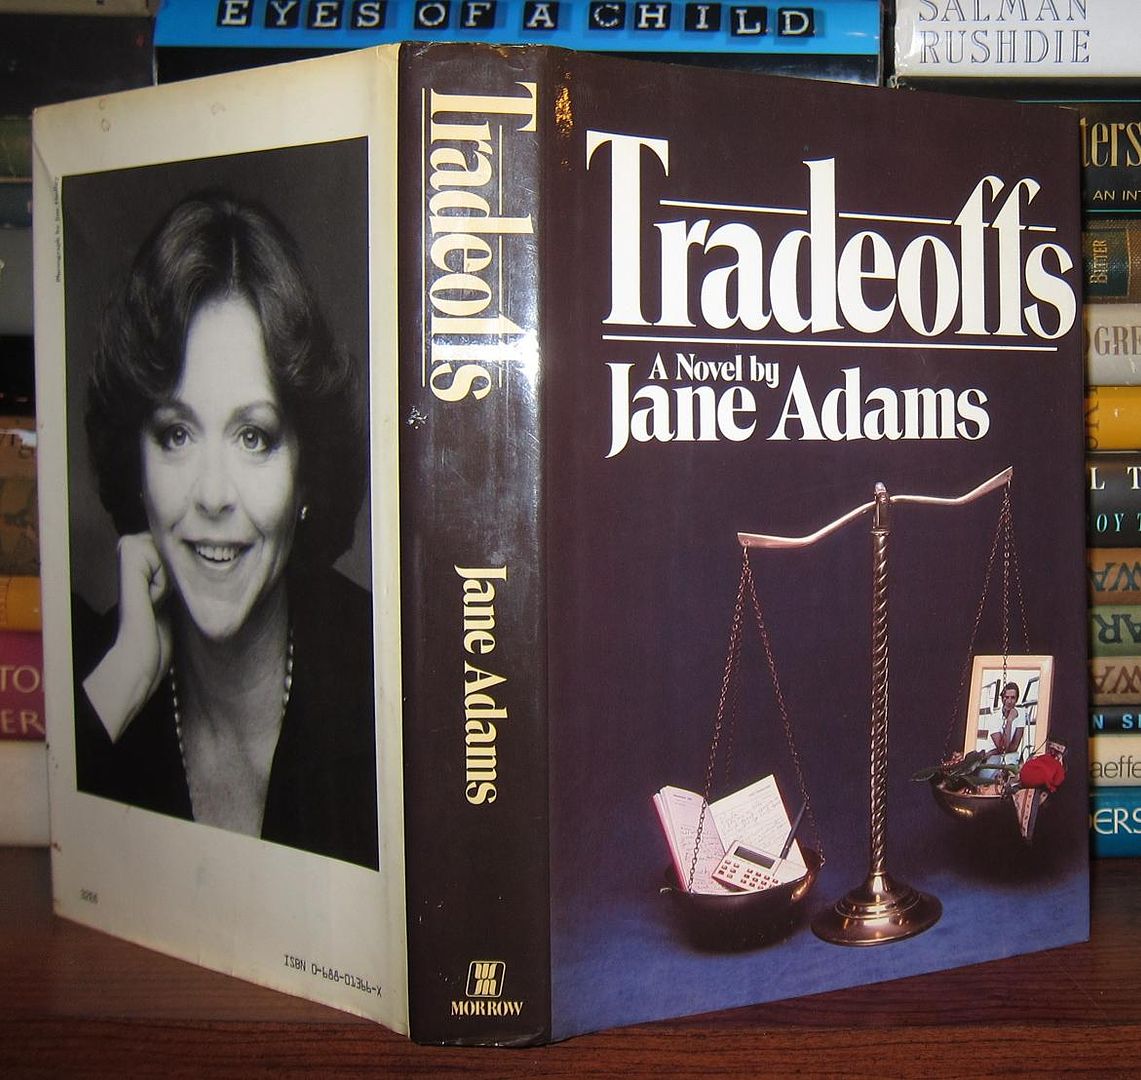 ADAMS, JANE - Tradeoffs